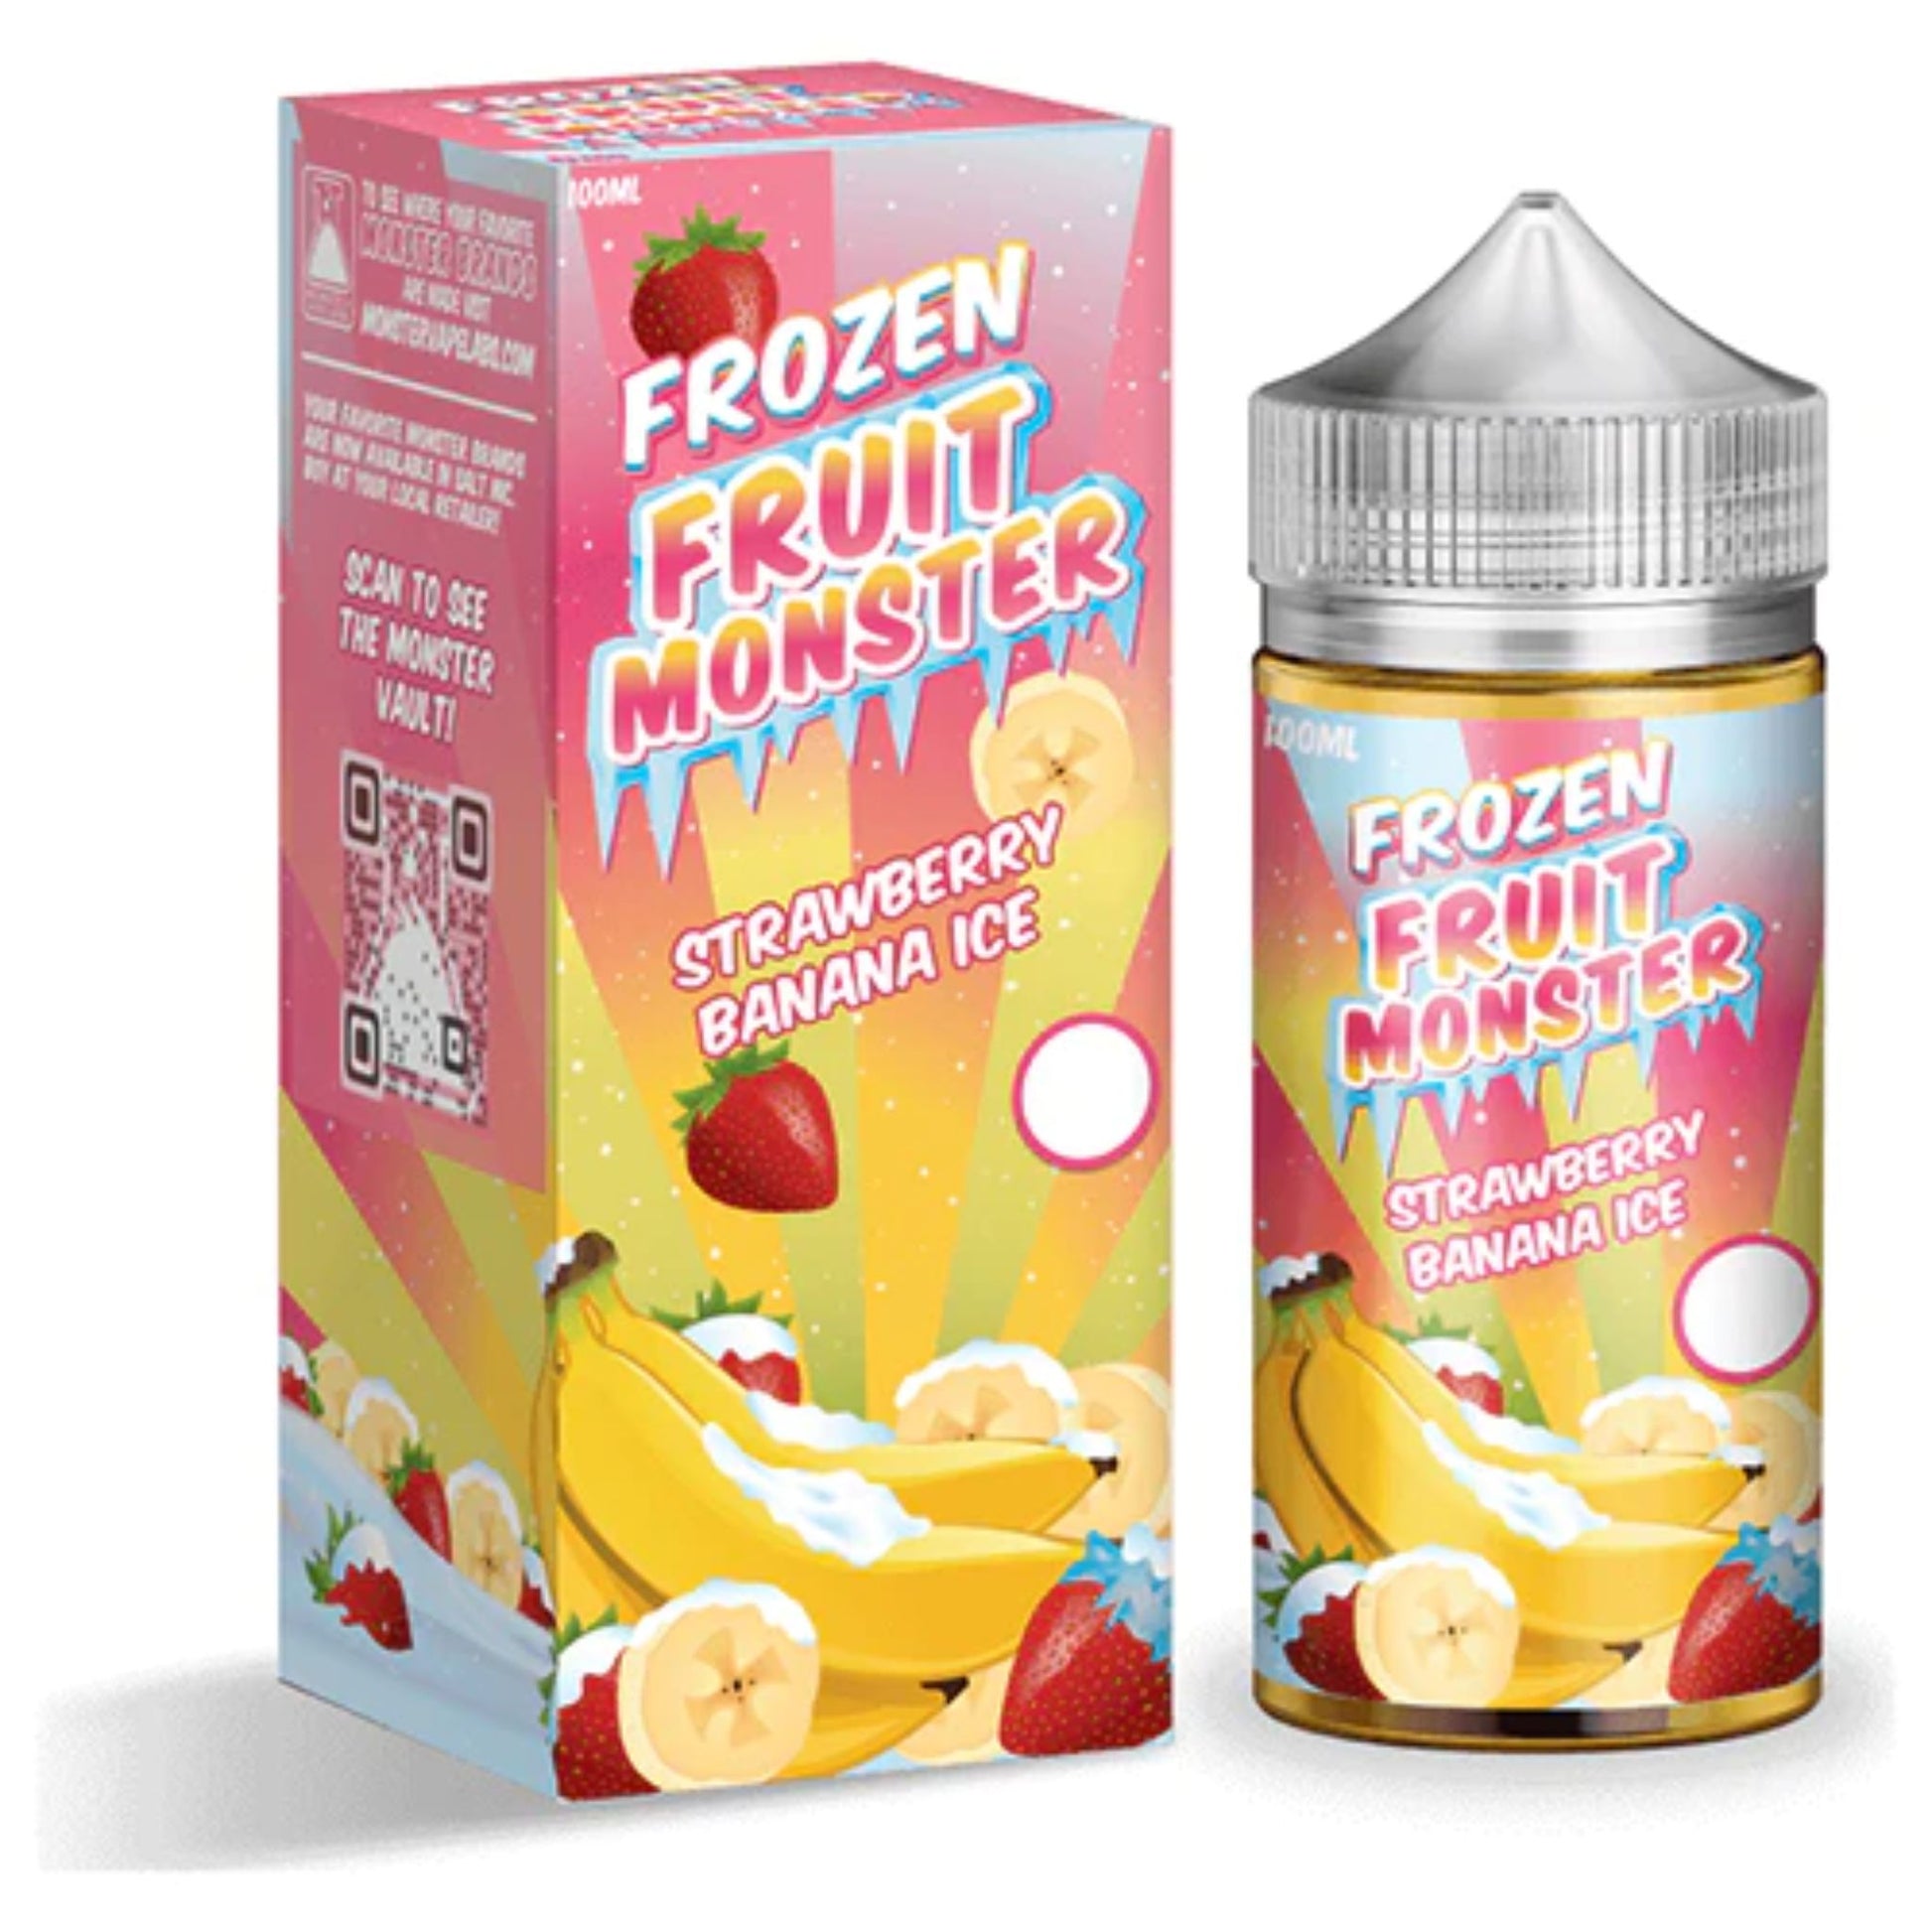 Frozen Fruit Monster | Strawberry Banana Ice 100ml bottle and box